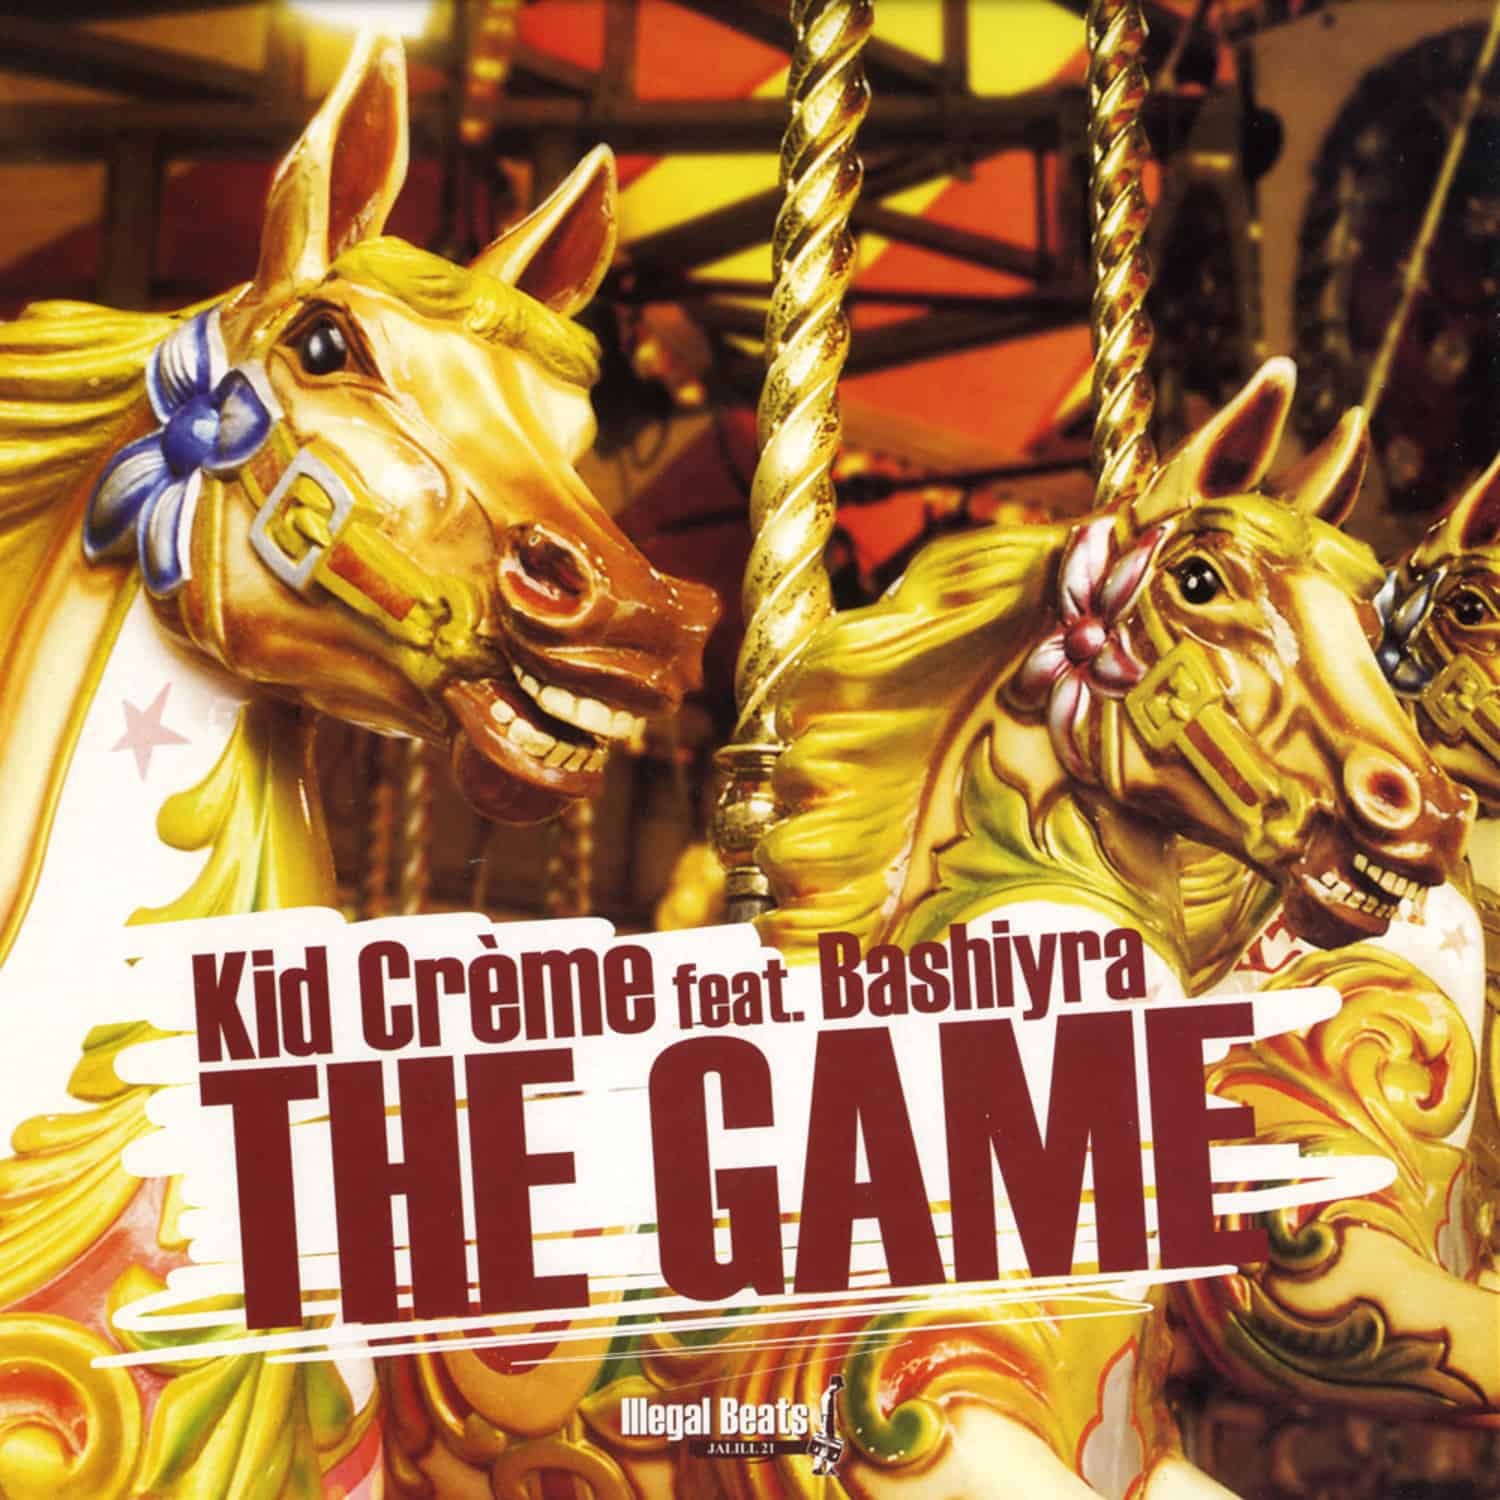 Kid Creme feat. Bashiyra - GAME